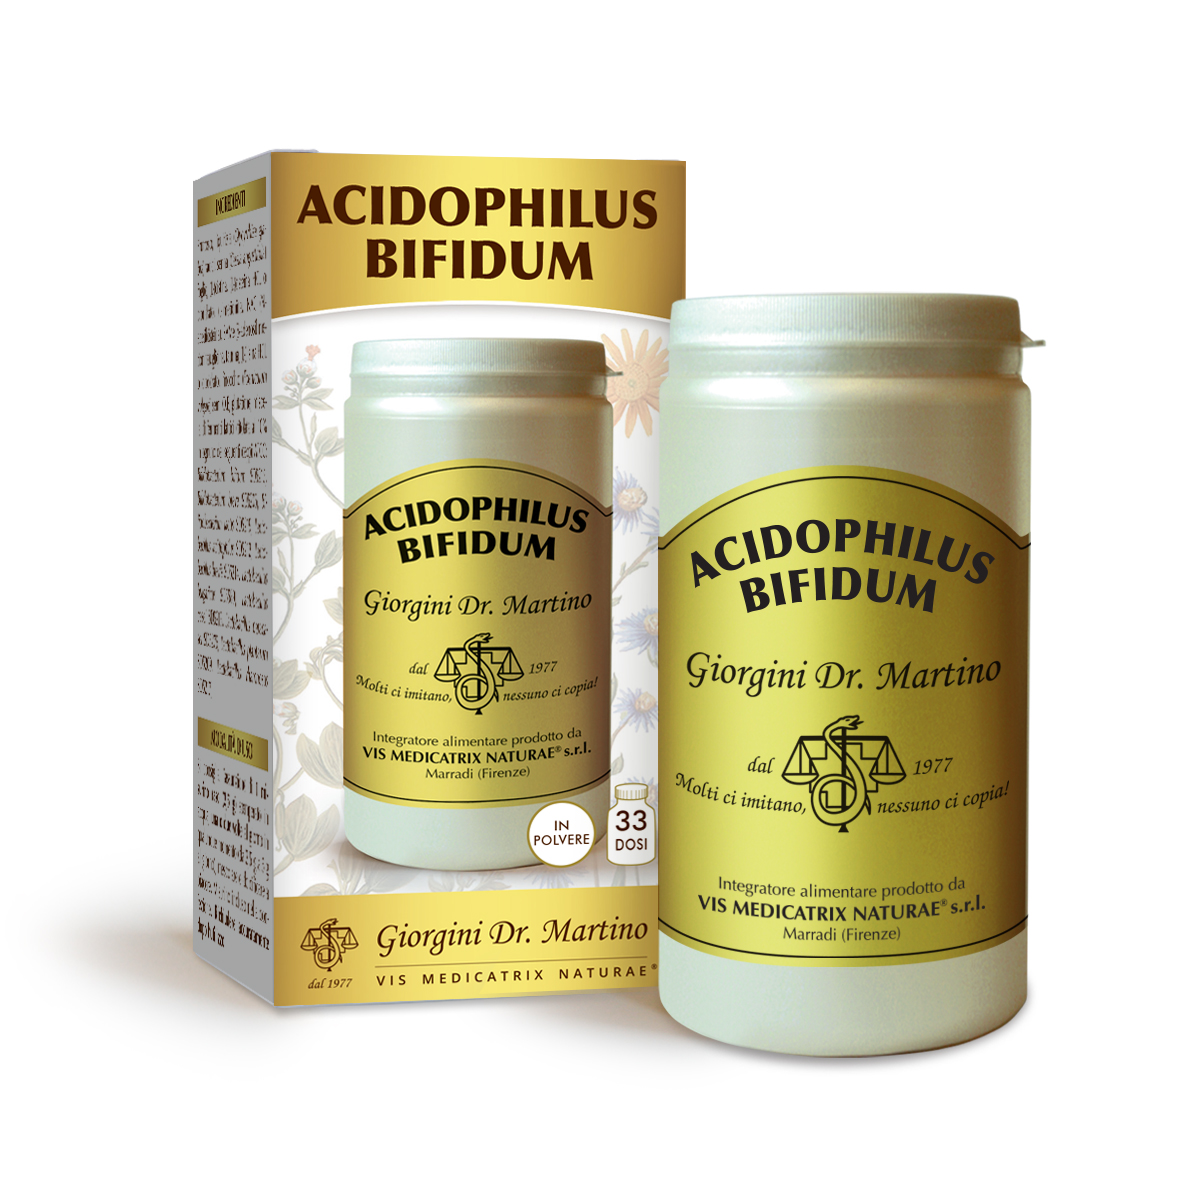 ACIDOPHILUS BIFIDUM polvere 100 g